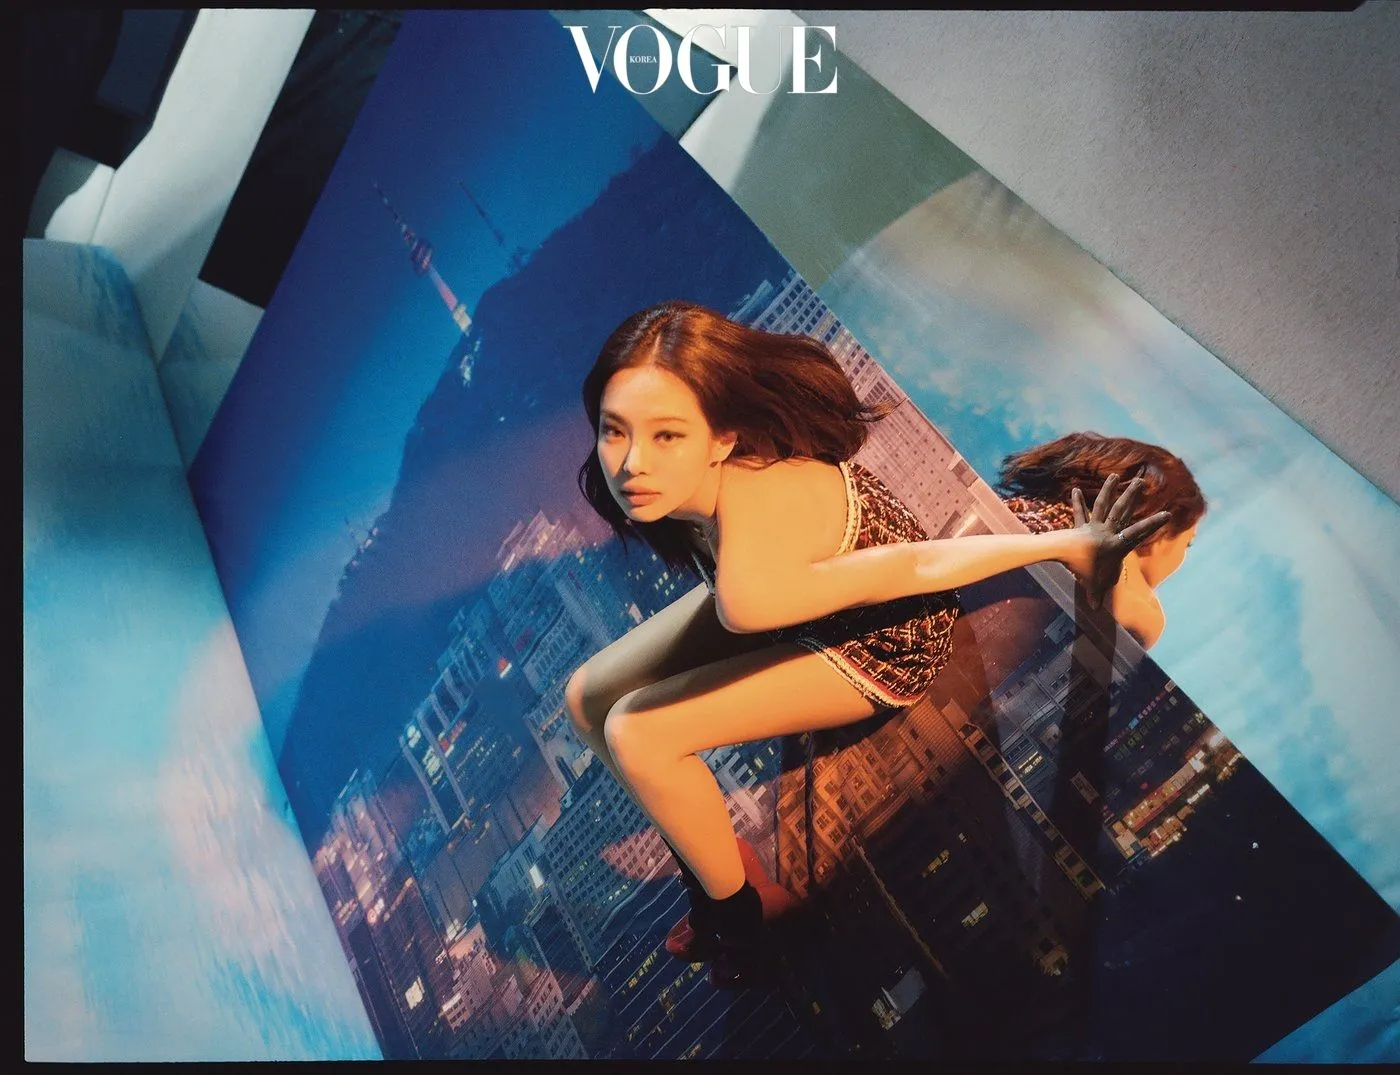 Vogue Korea March 2020 Covers (Vogue Korea)